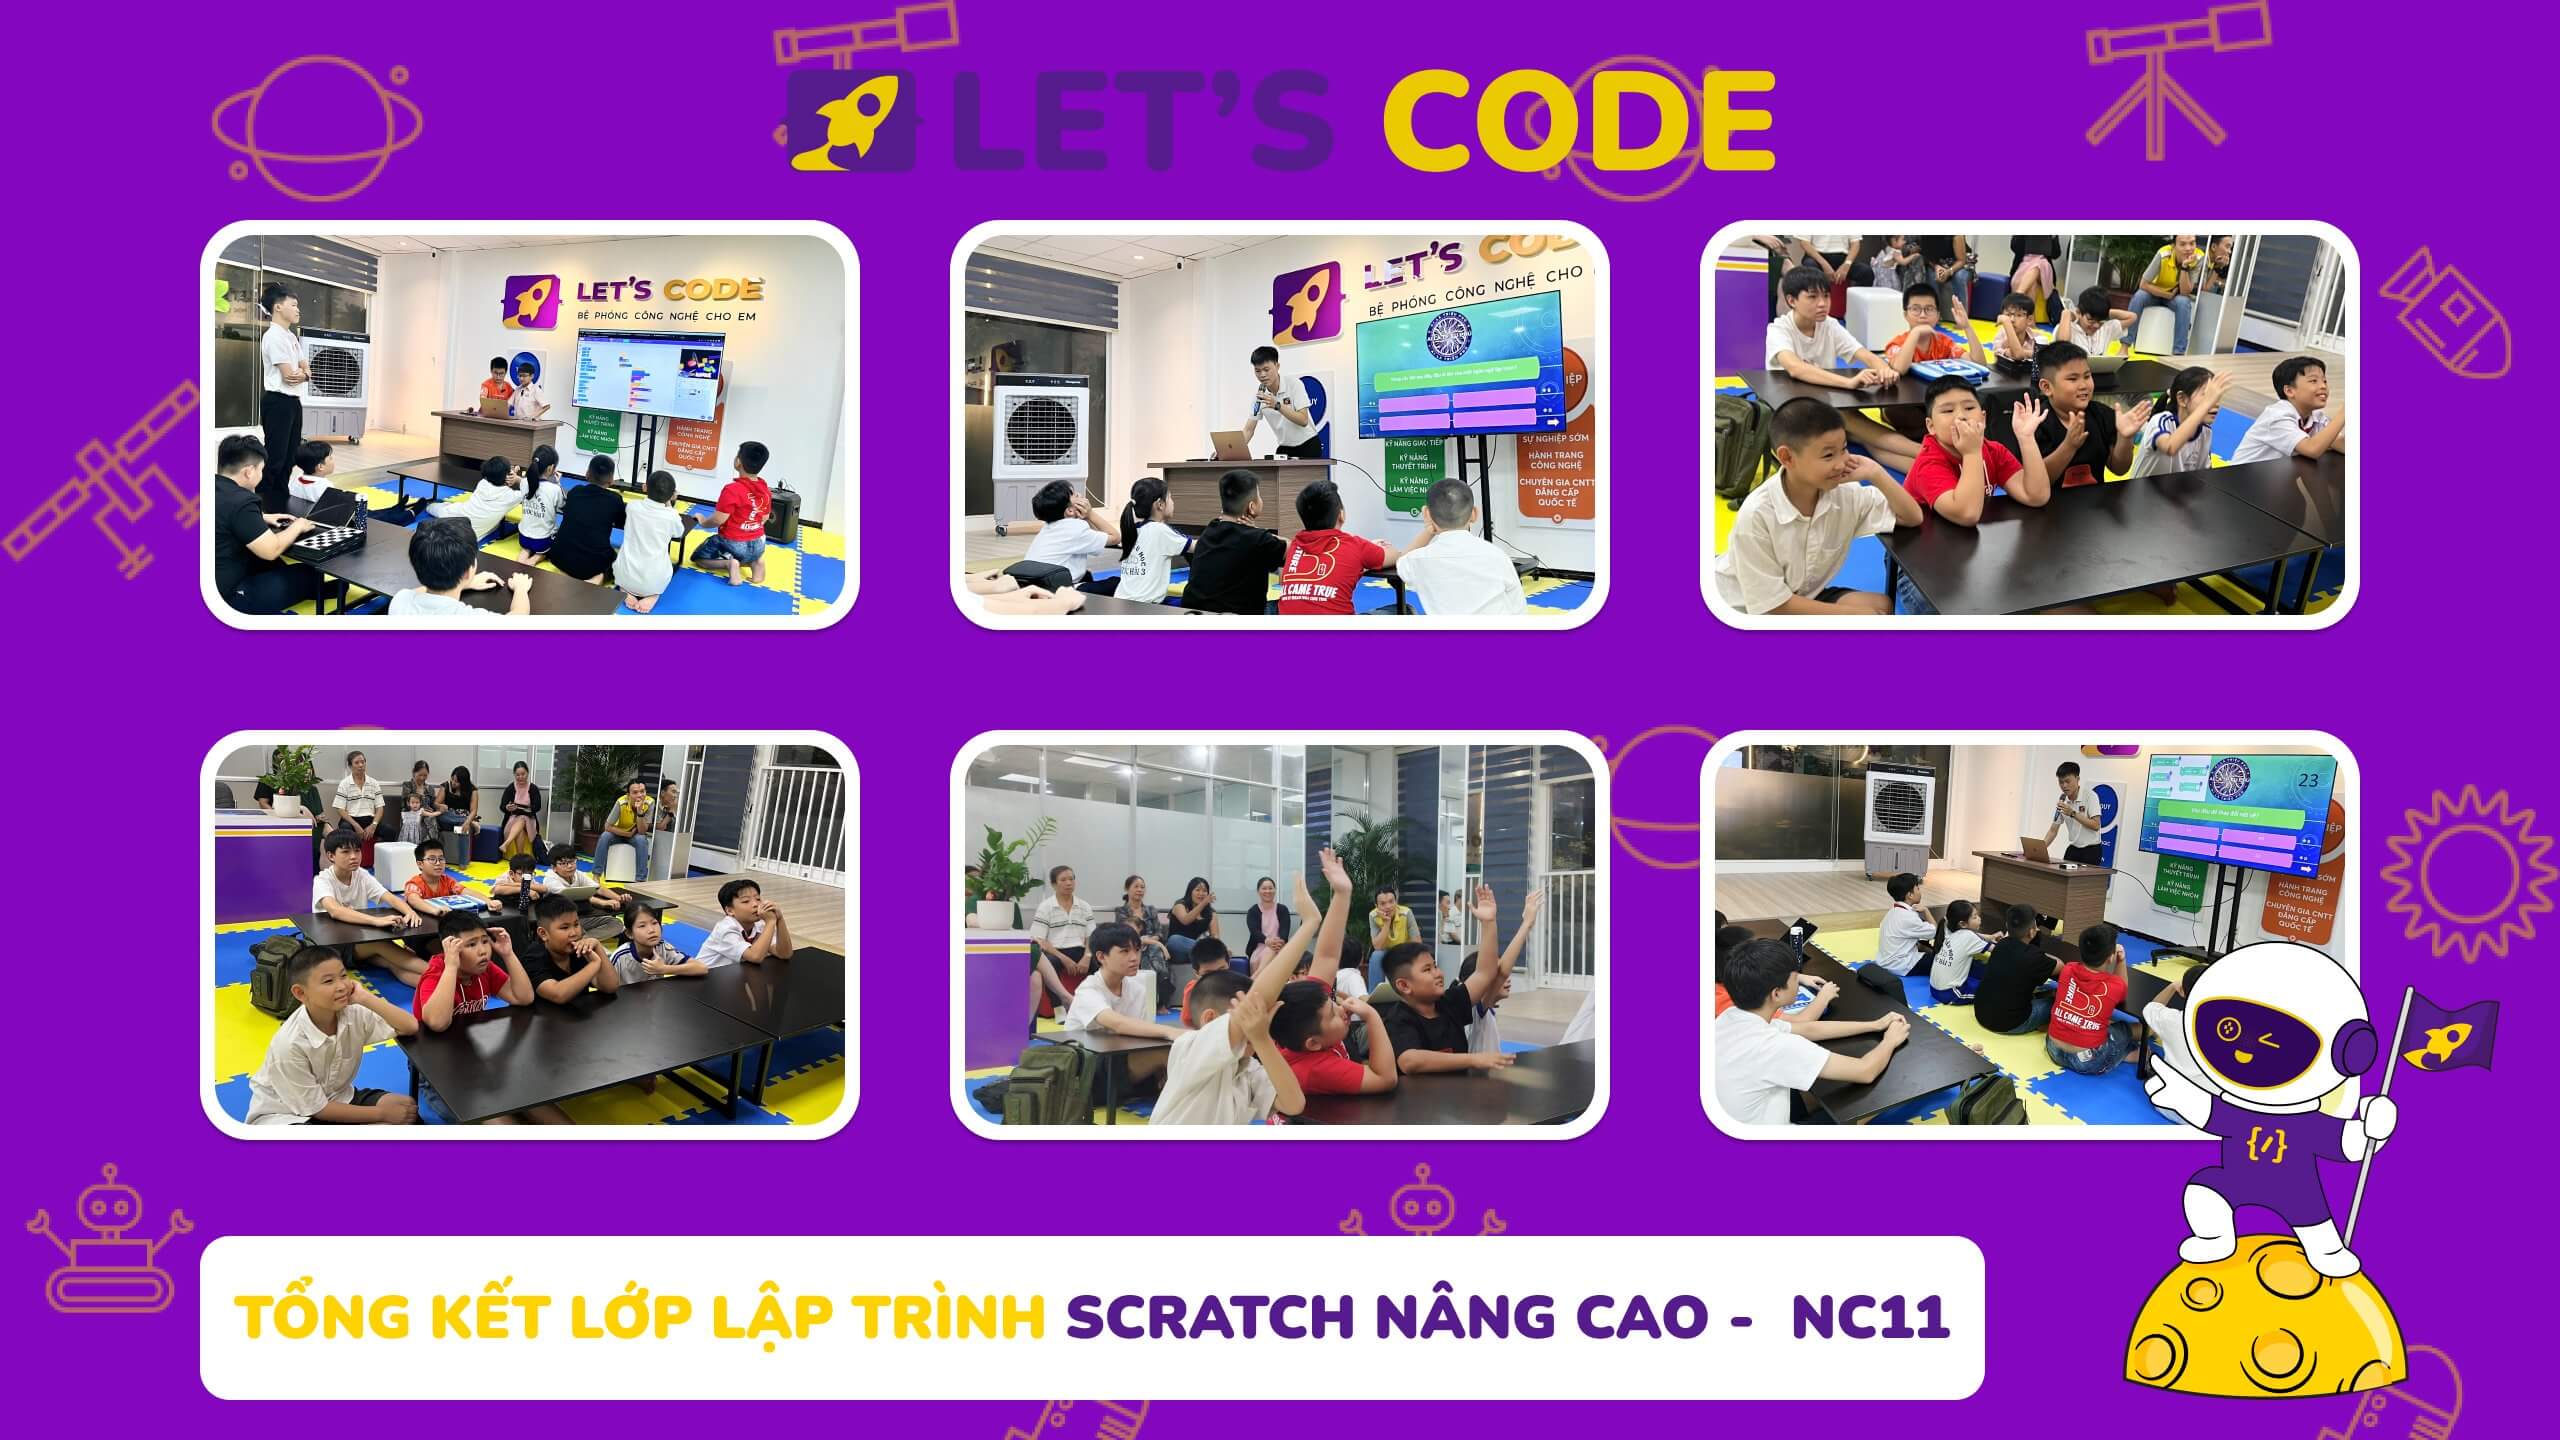 Tổng kết khóa học lập trình Scratch nâng cao – NC11